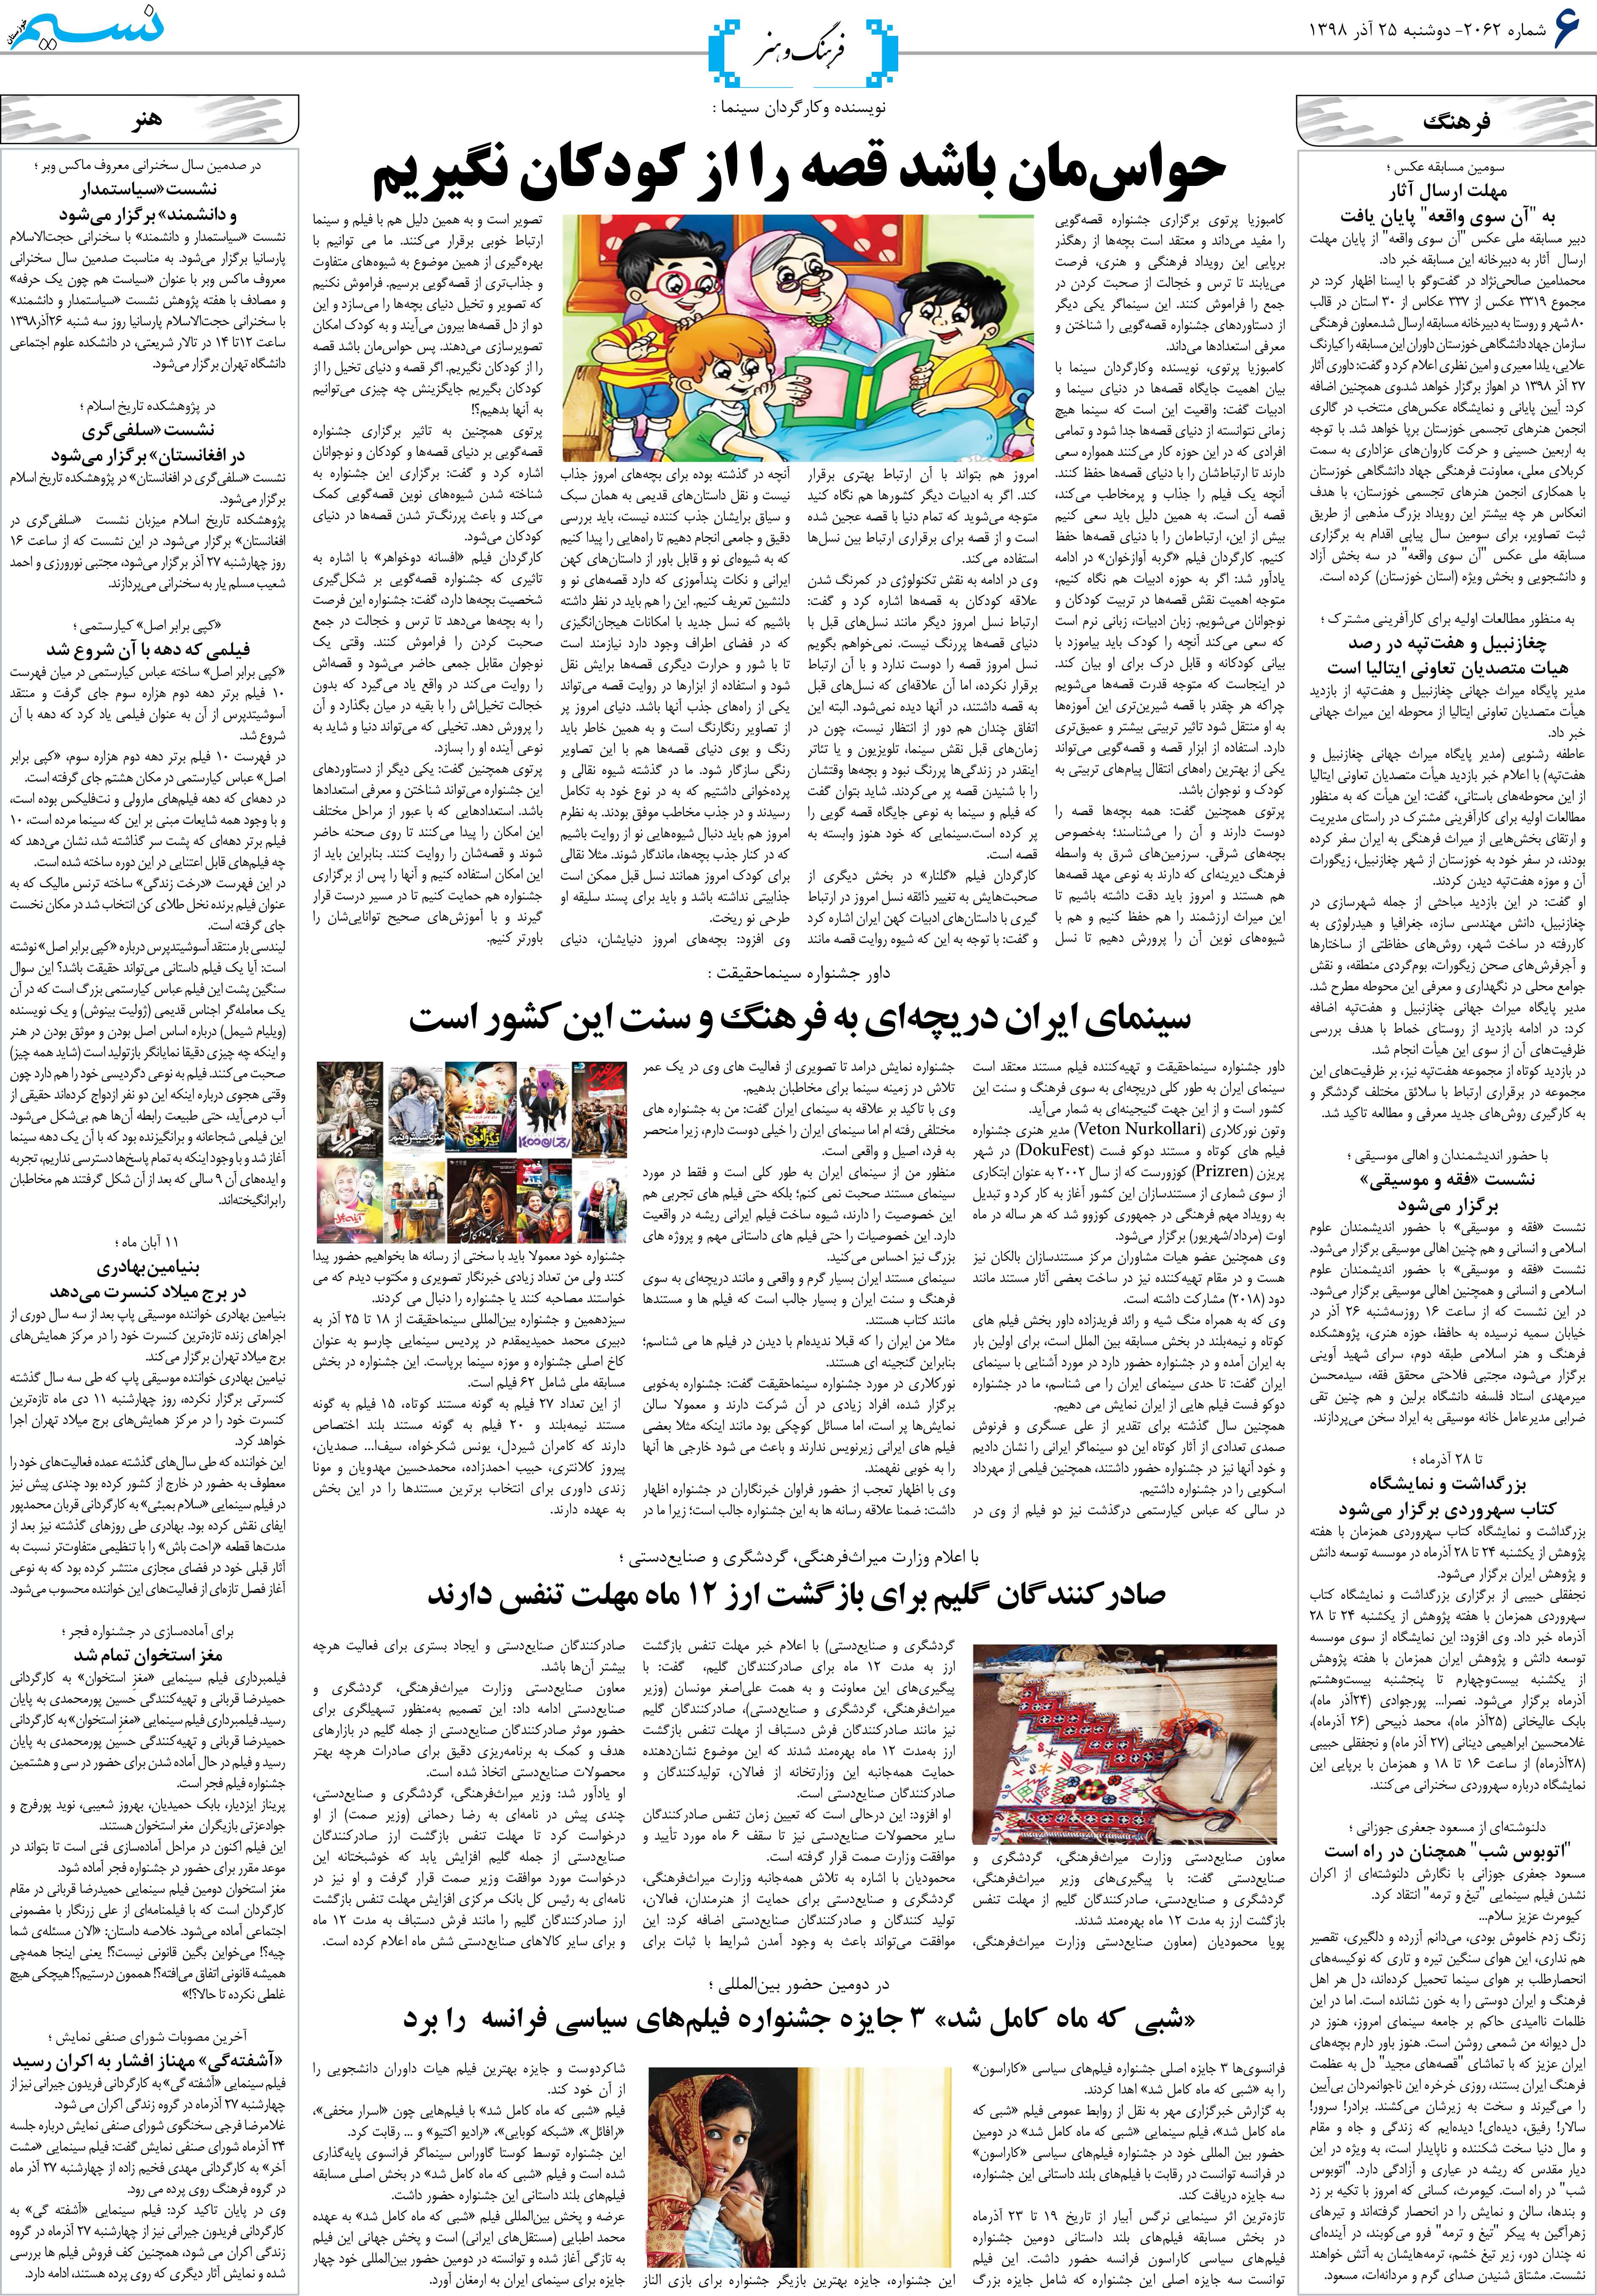 صفحه فرهنگ و هنر روزنامه نسیم شماره 2062